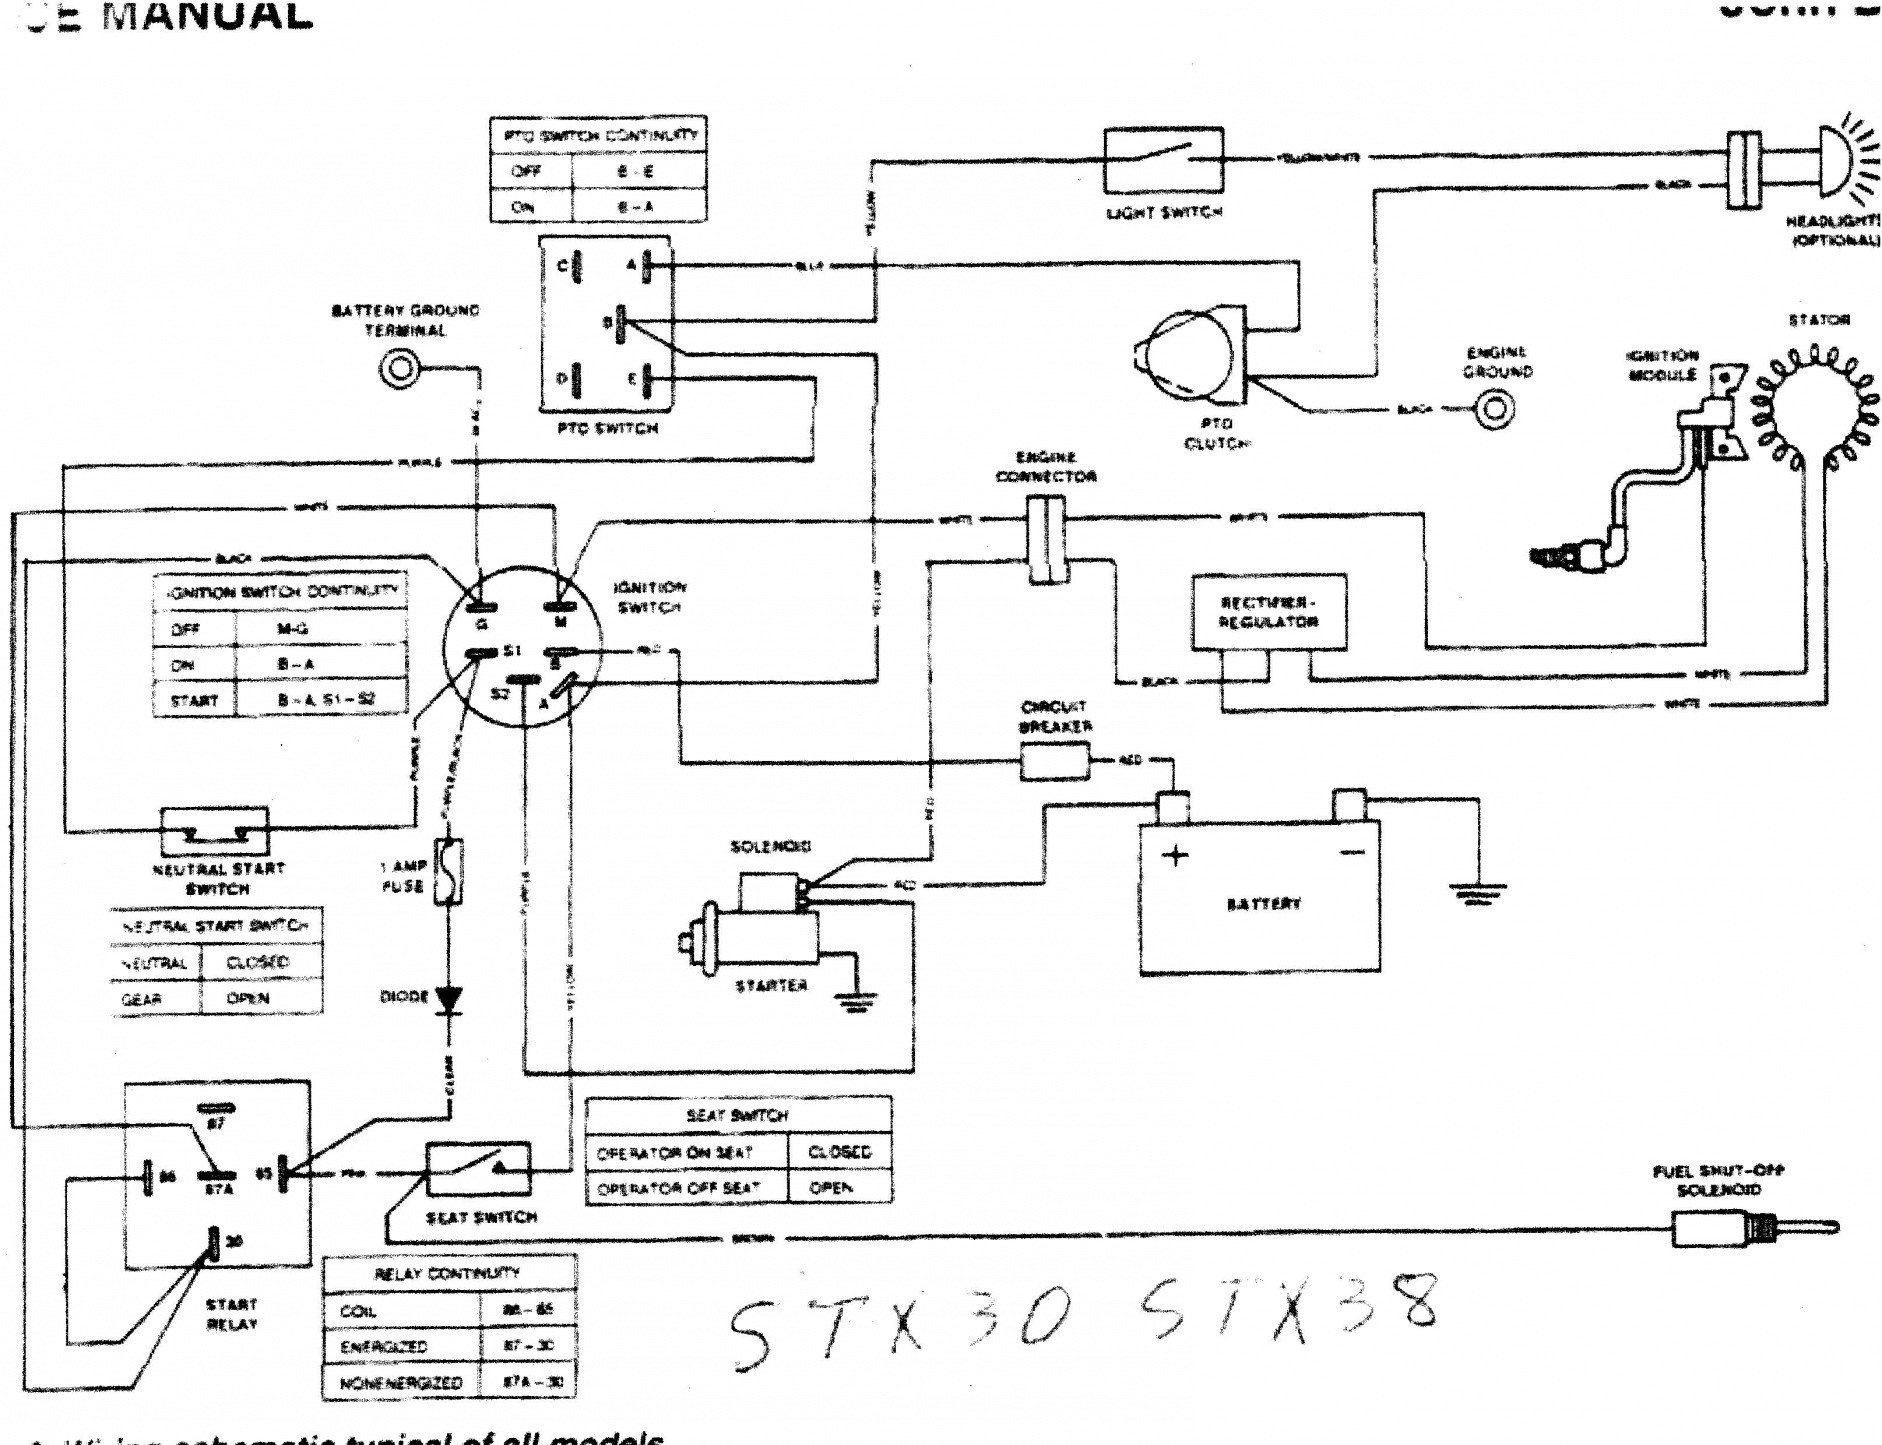 John Deere D140 Wiring Diagram My Wiring Diagram